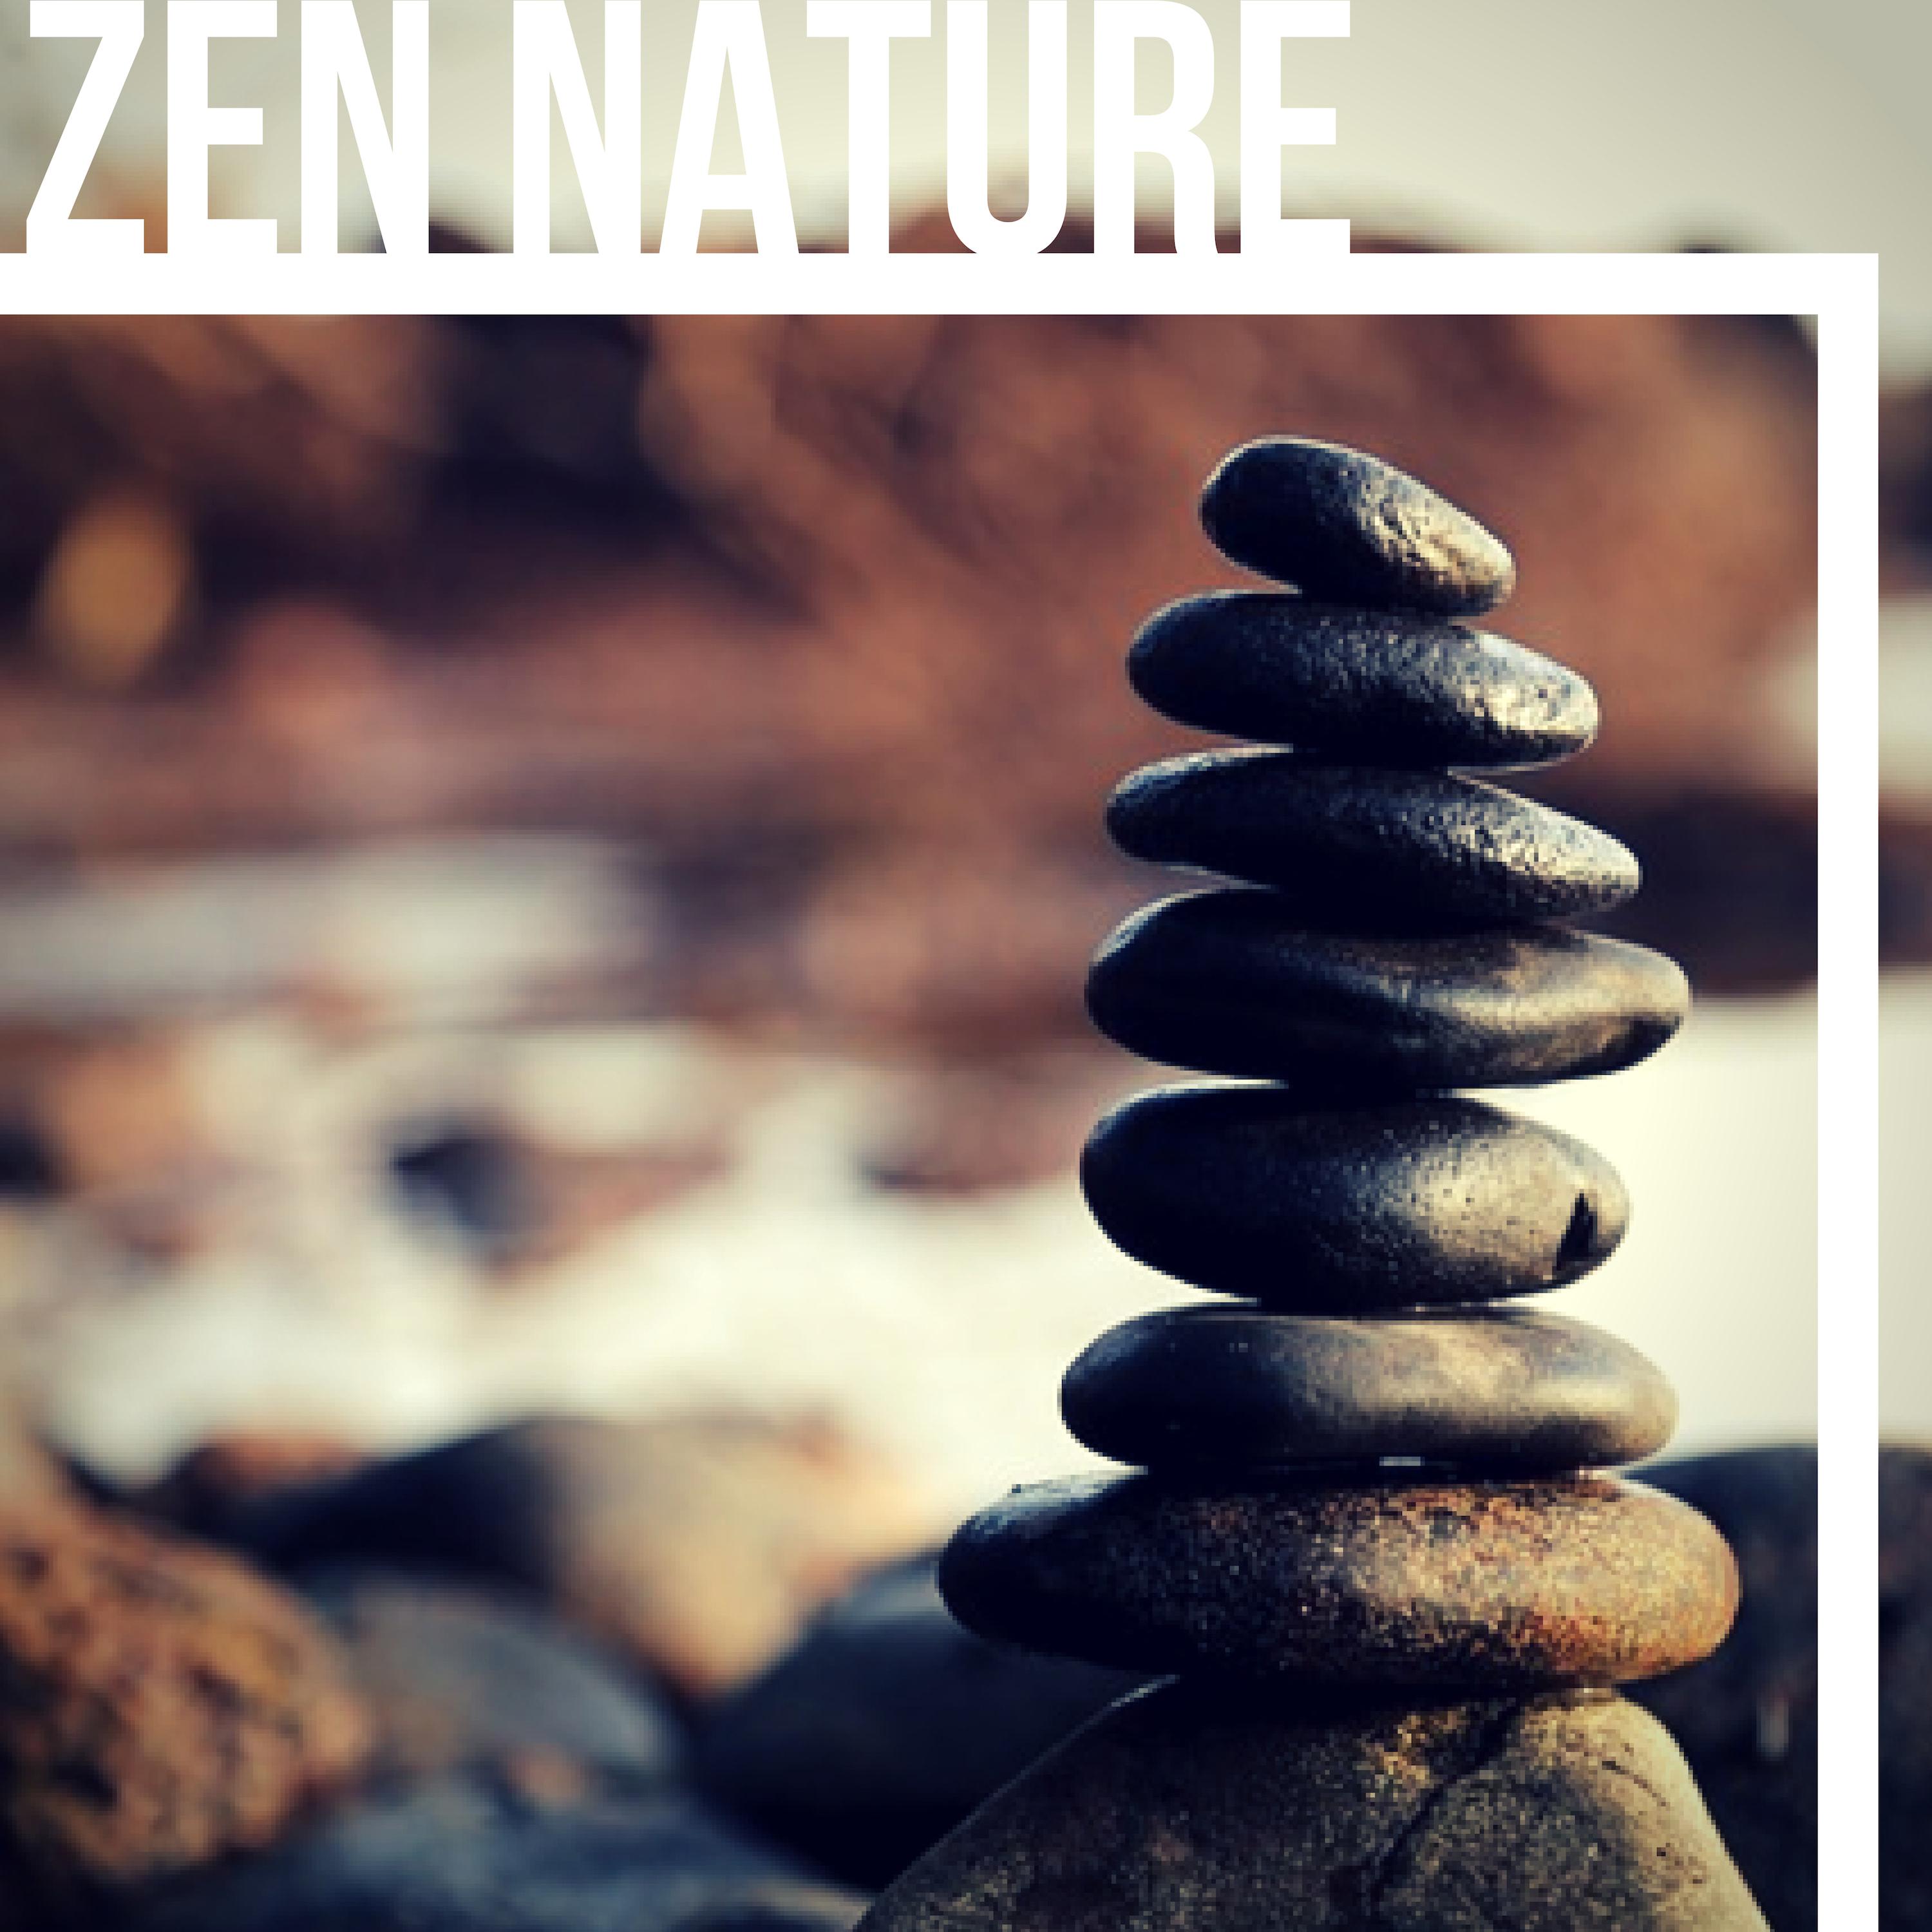 Zen Nature - Natural Sounds for Inner Balance, Zen Garden Chirping Birds